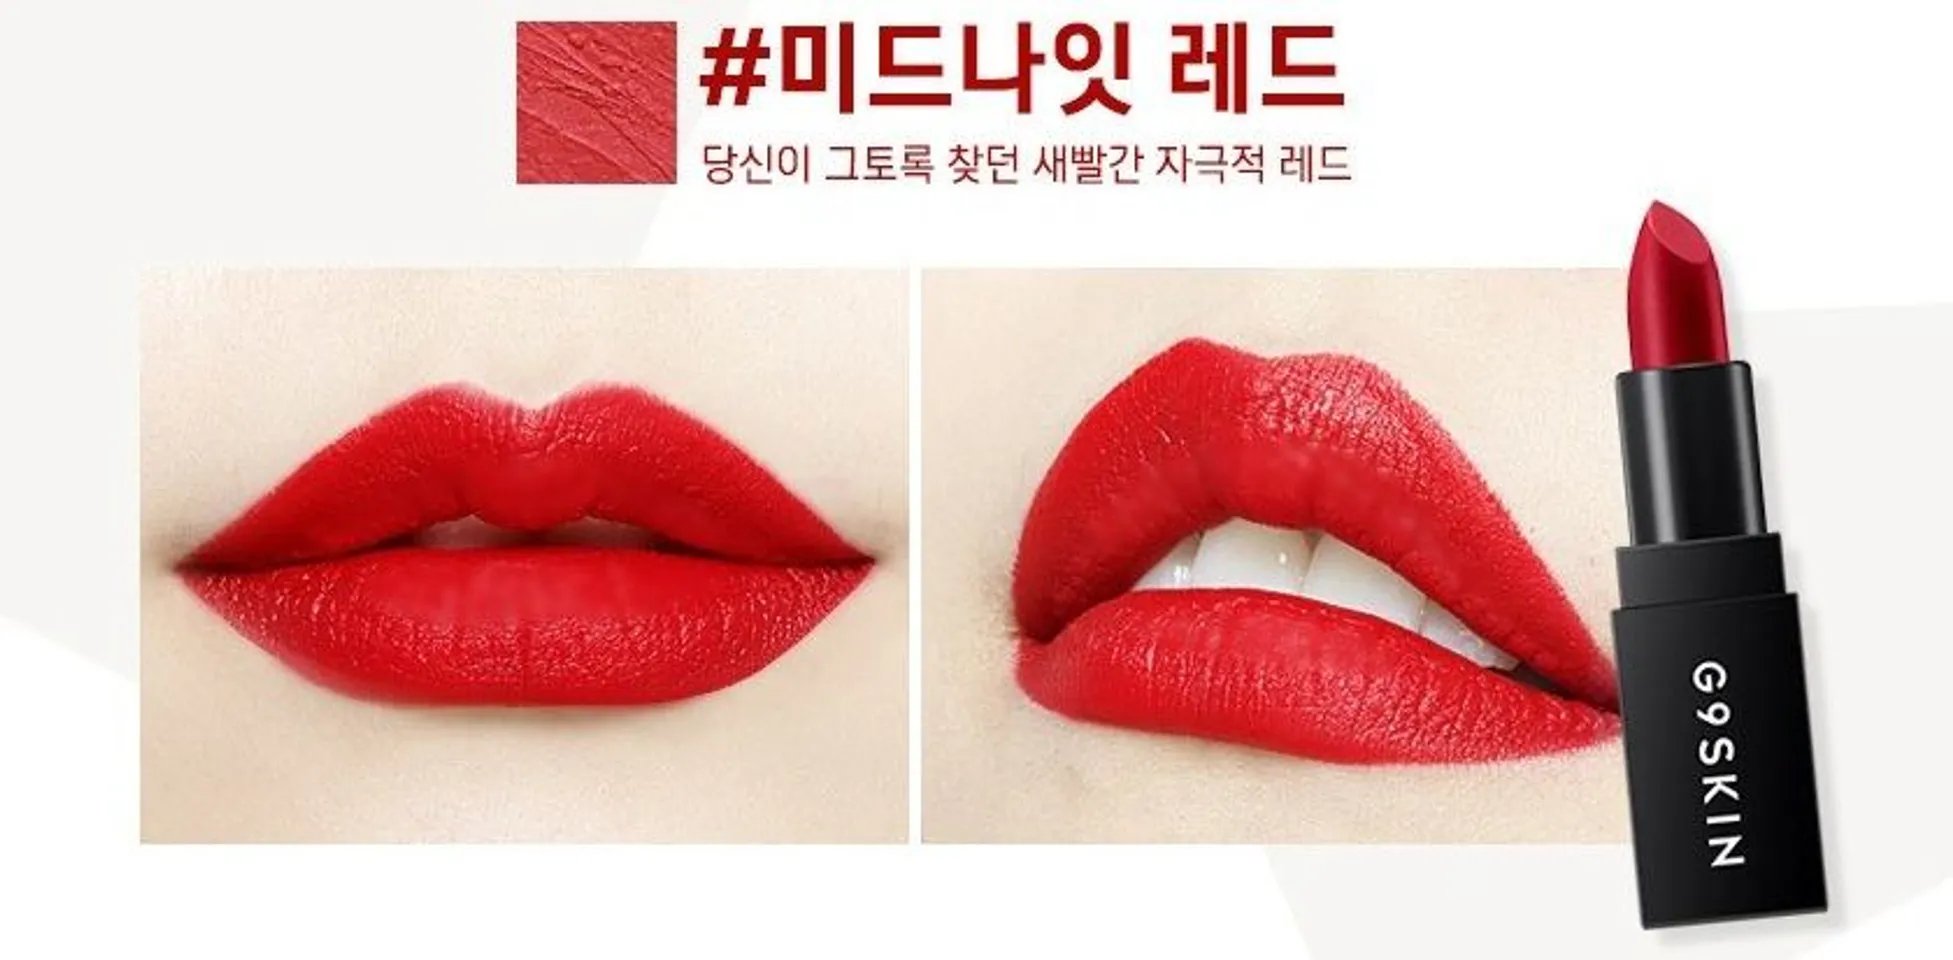 Son thỏi G9Skin First Lipstick 5 màu thời trang siêu hot, 01